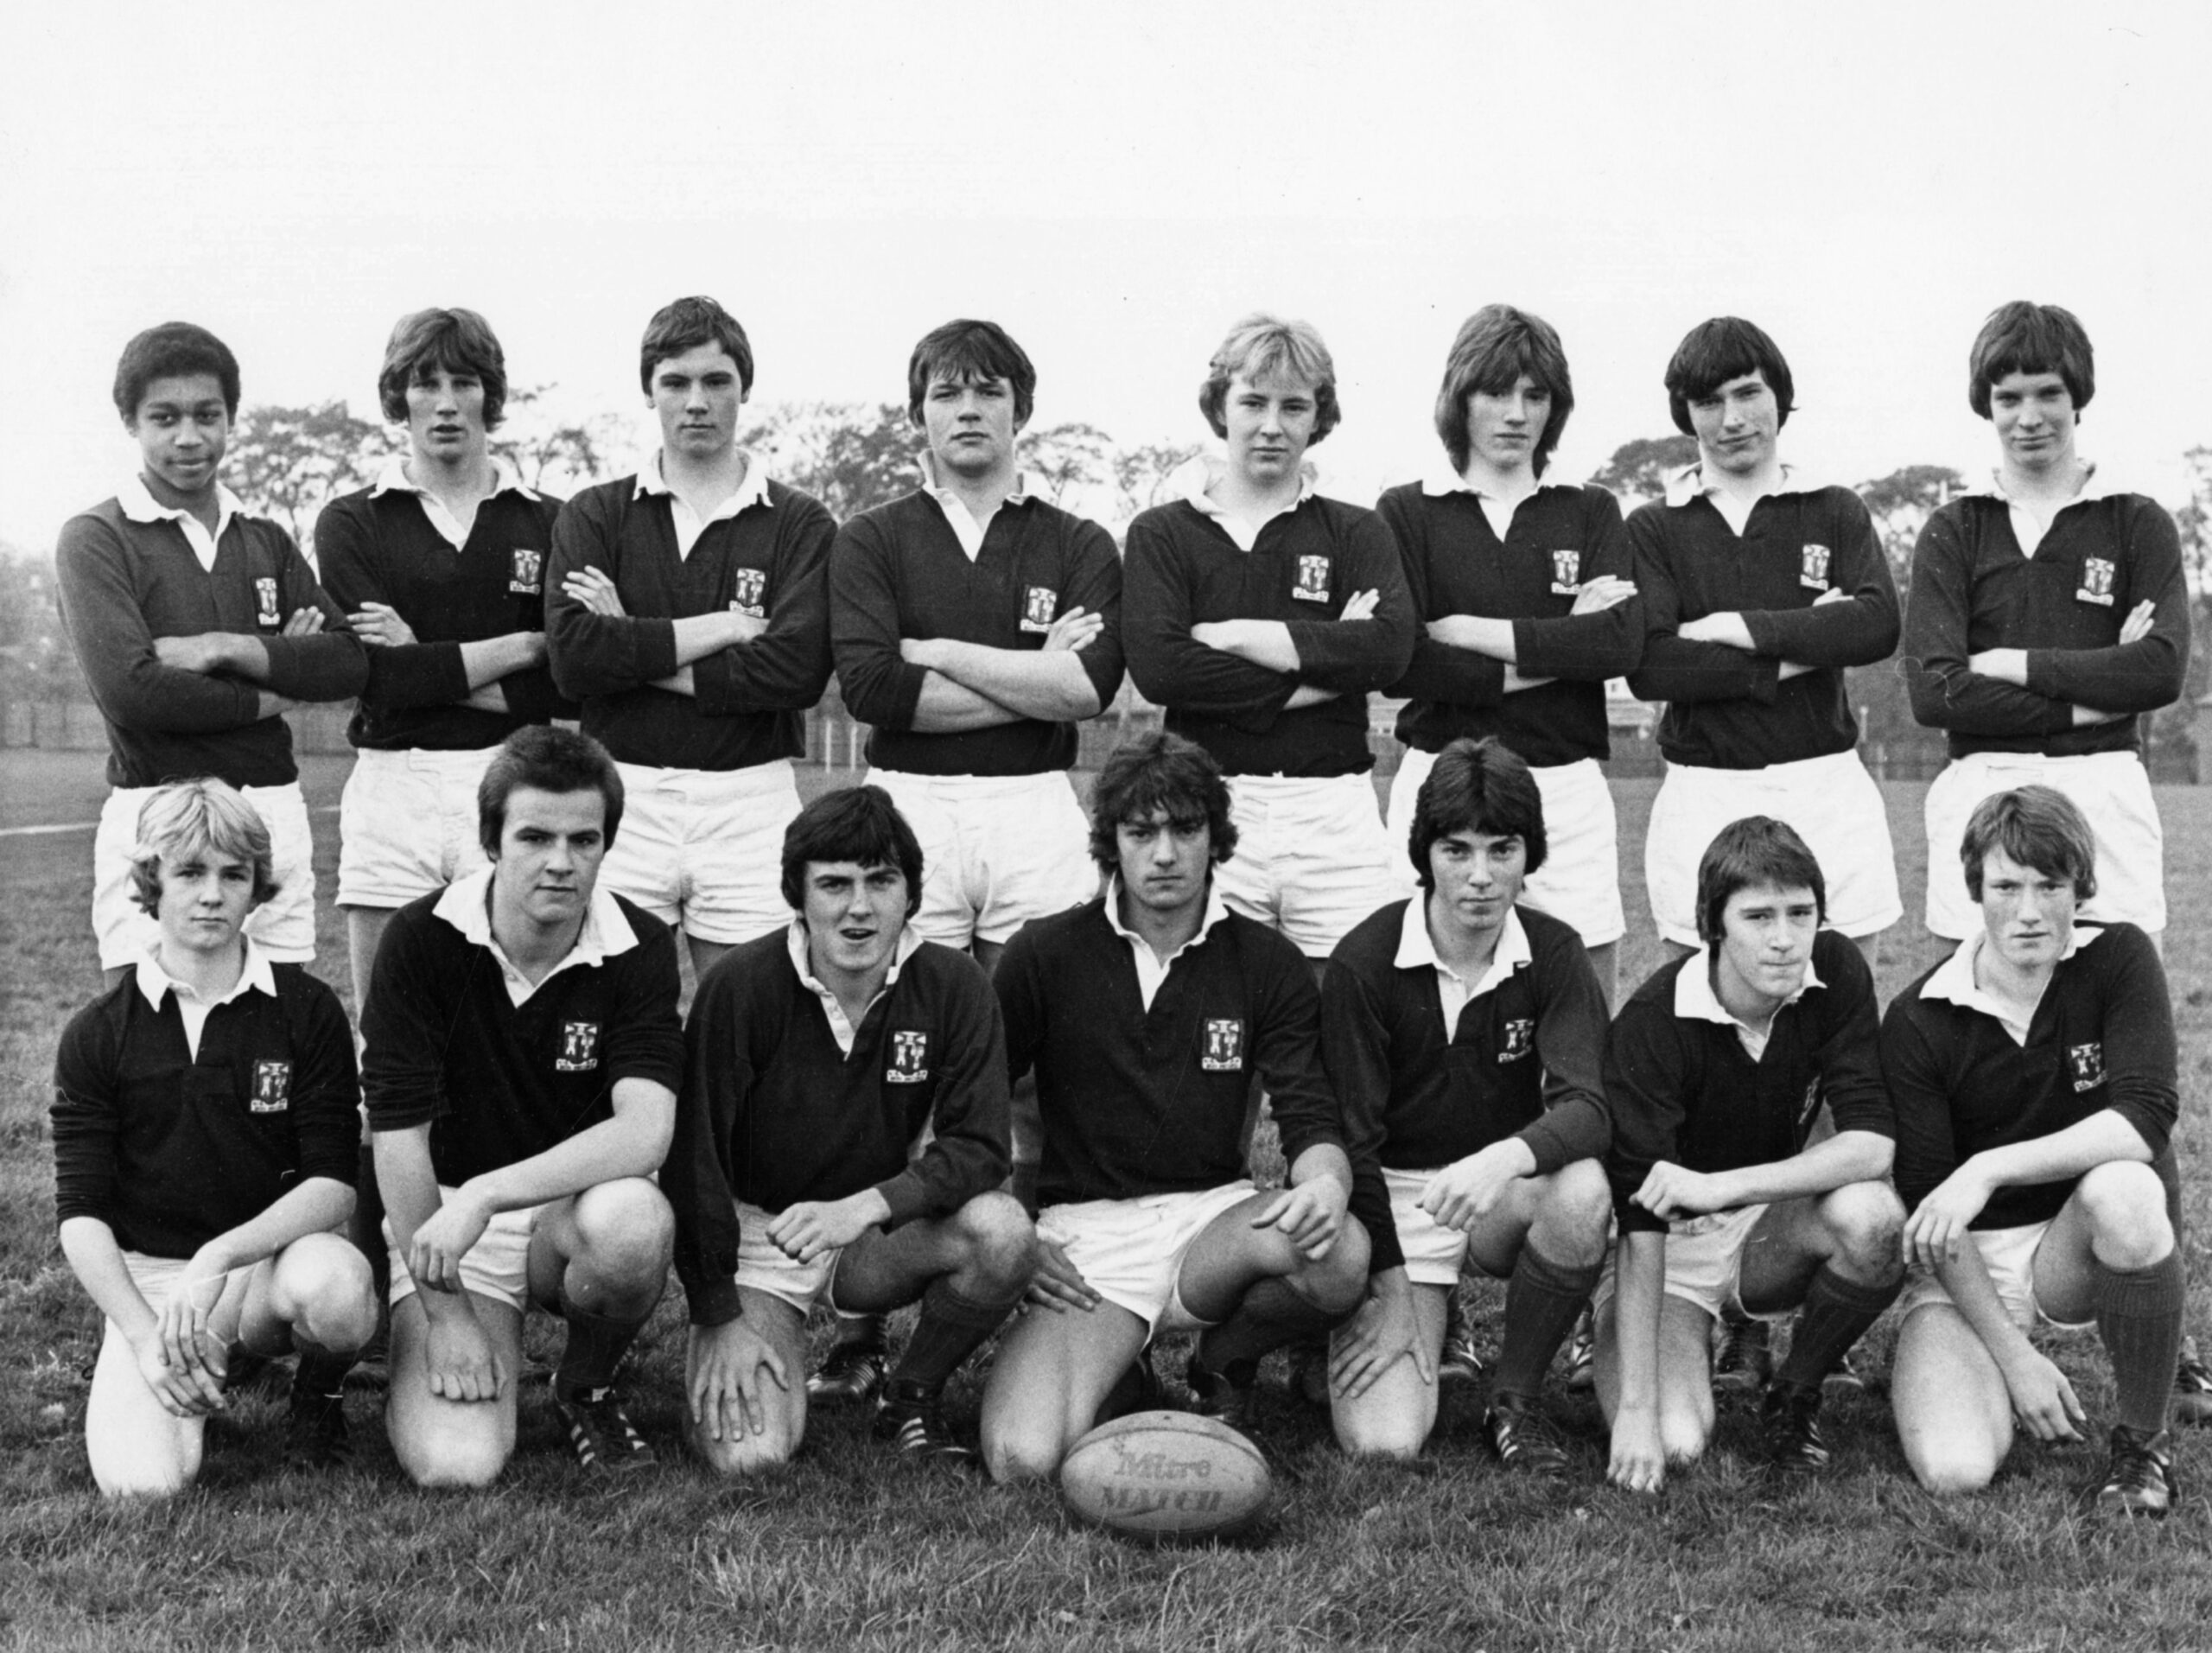 Aberdeen Grammar School senior rugby team photographed in 1979.